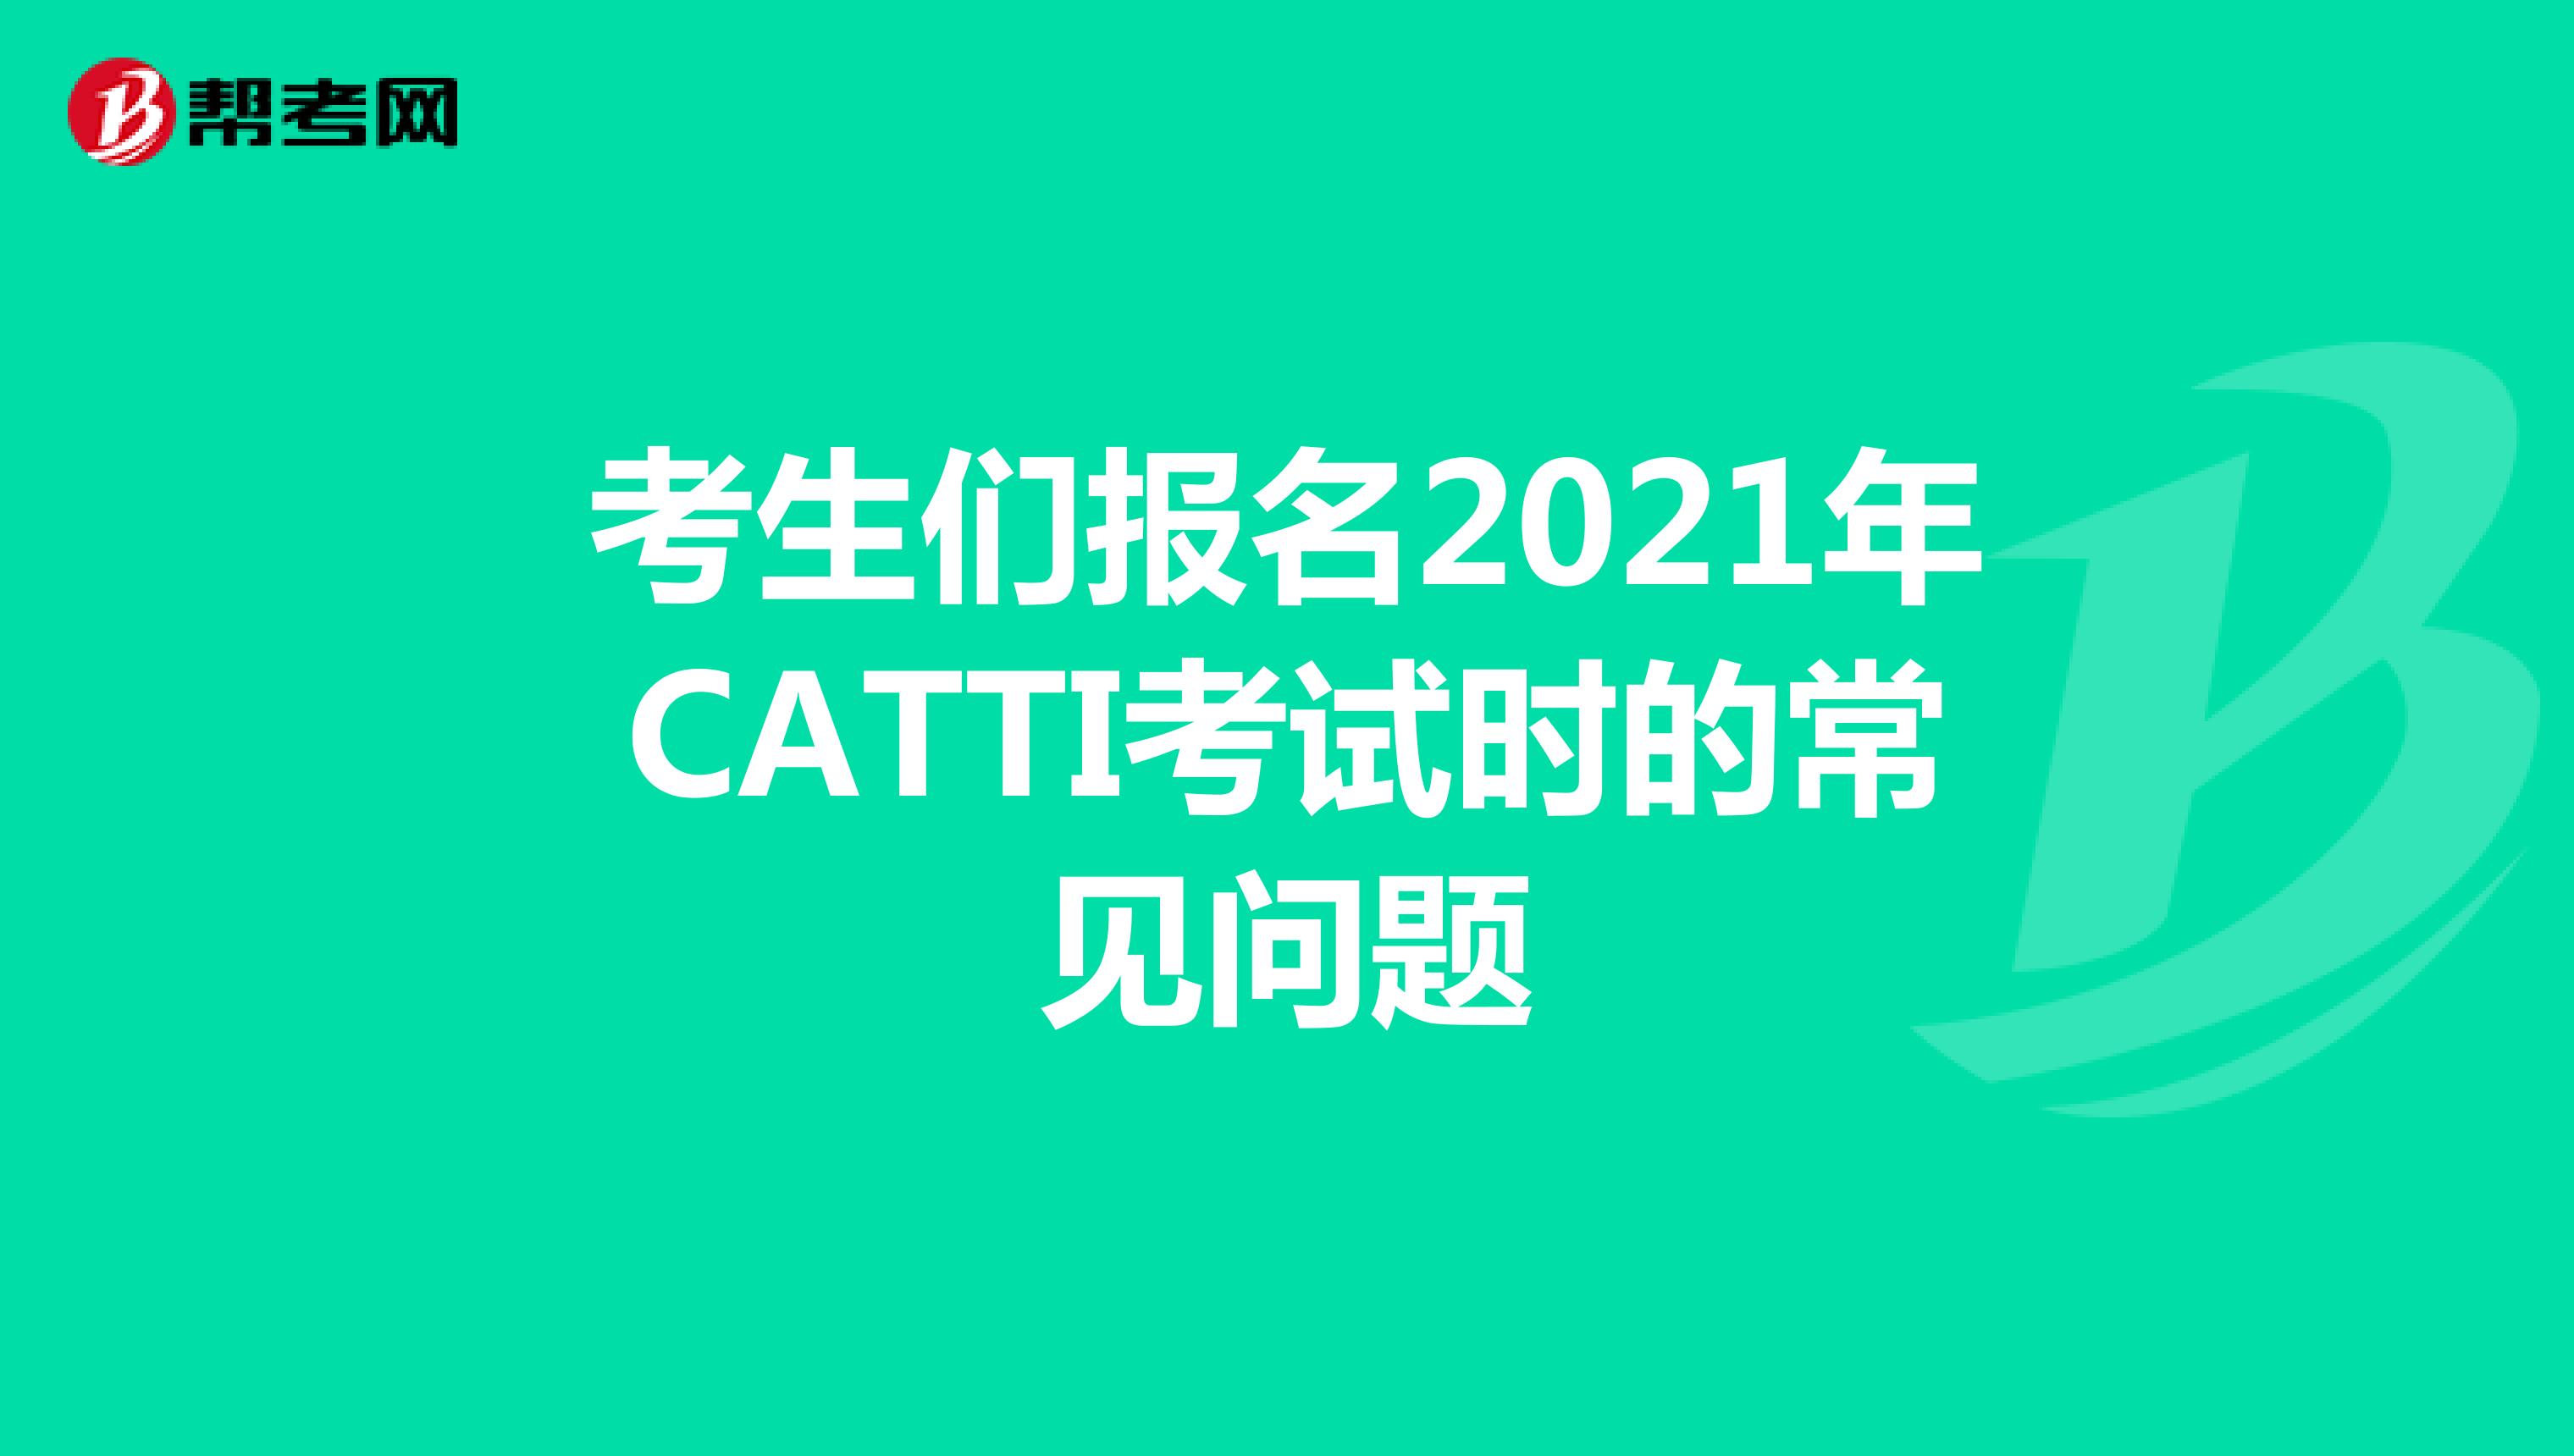 考生们报名2021年CATTI考试时的常见问题